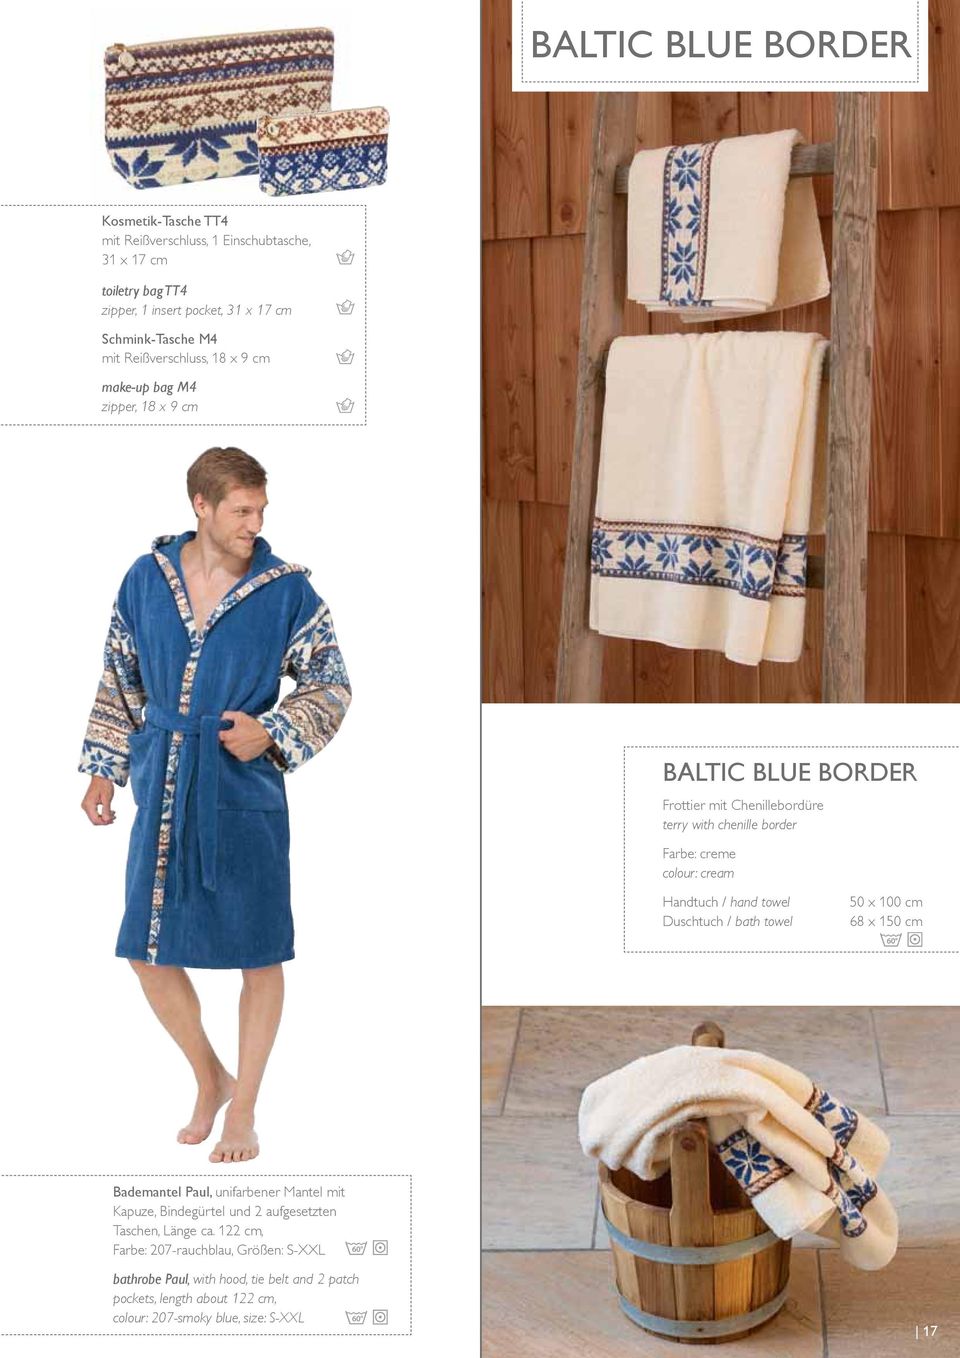 Handtuch / hand towel Duschtuch / bath towel 50 x 100 cm 68 x 150 cm Bademantel Paul, unifarbener Mantel mit Kapuze, Bindegürtel und 2 aufgesetzten Taschen, Länge